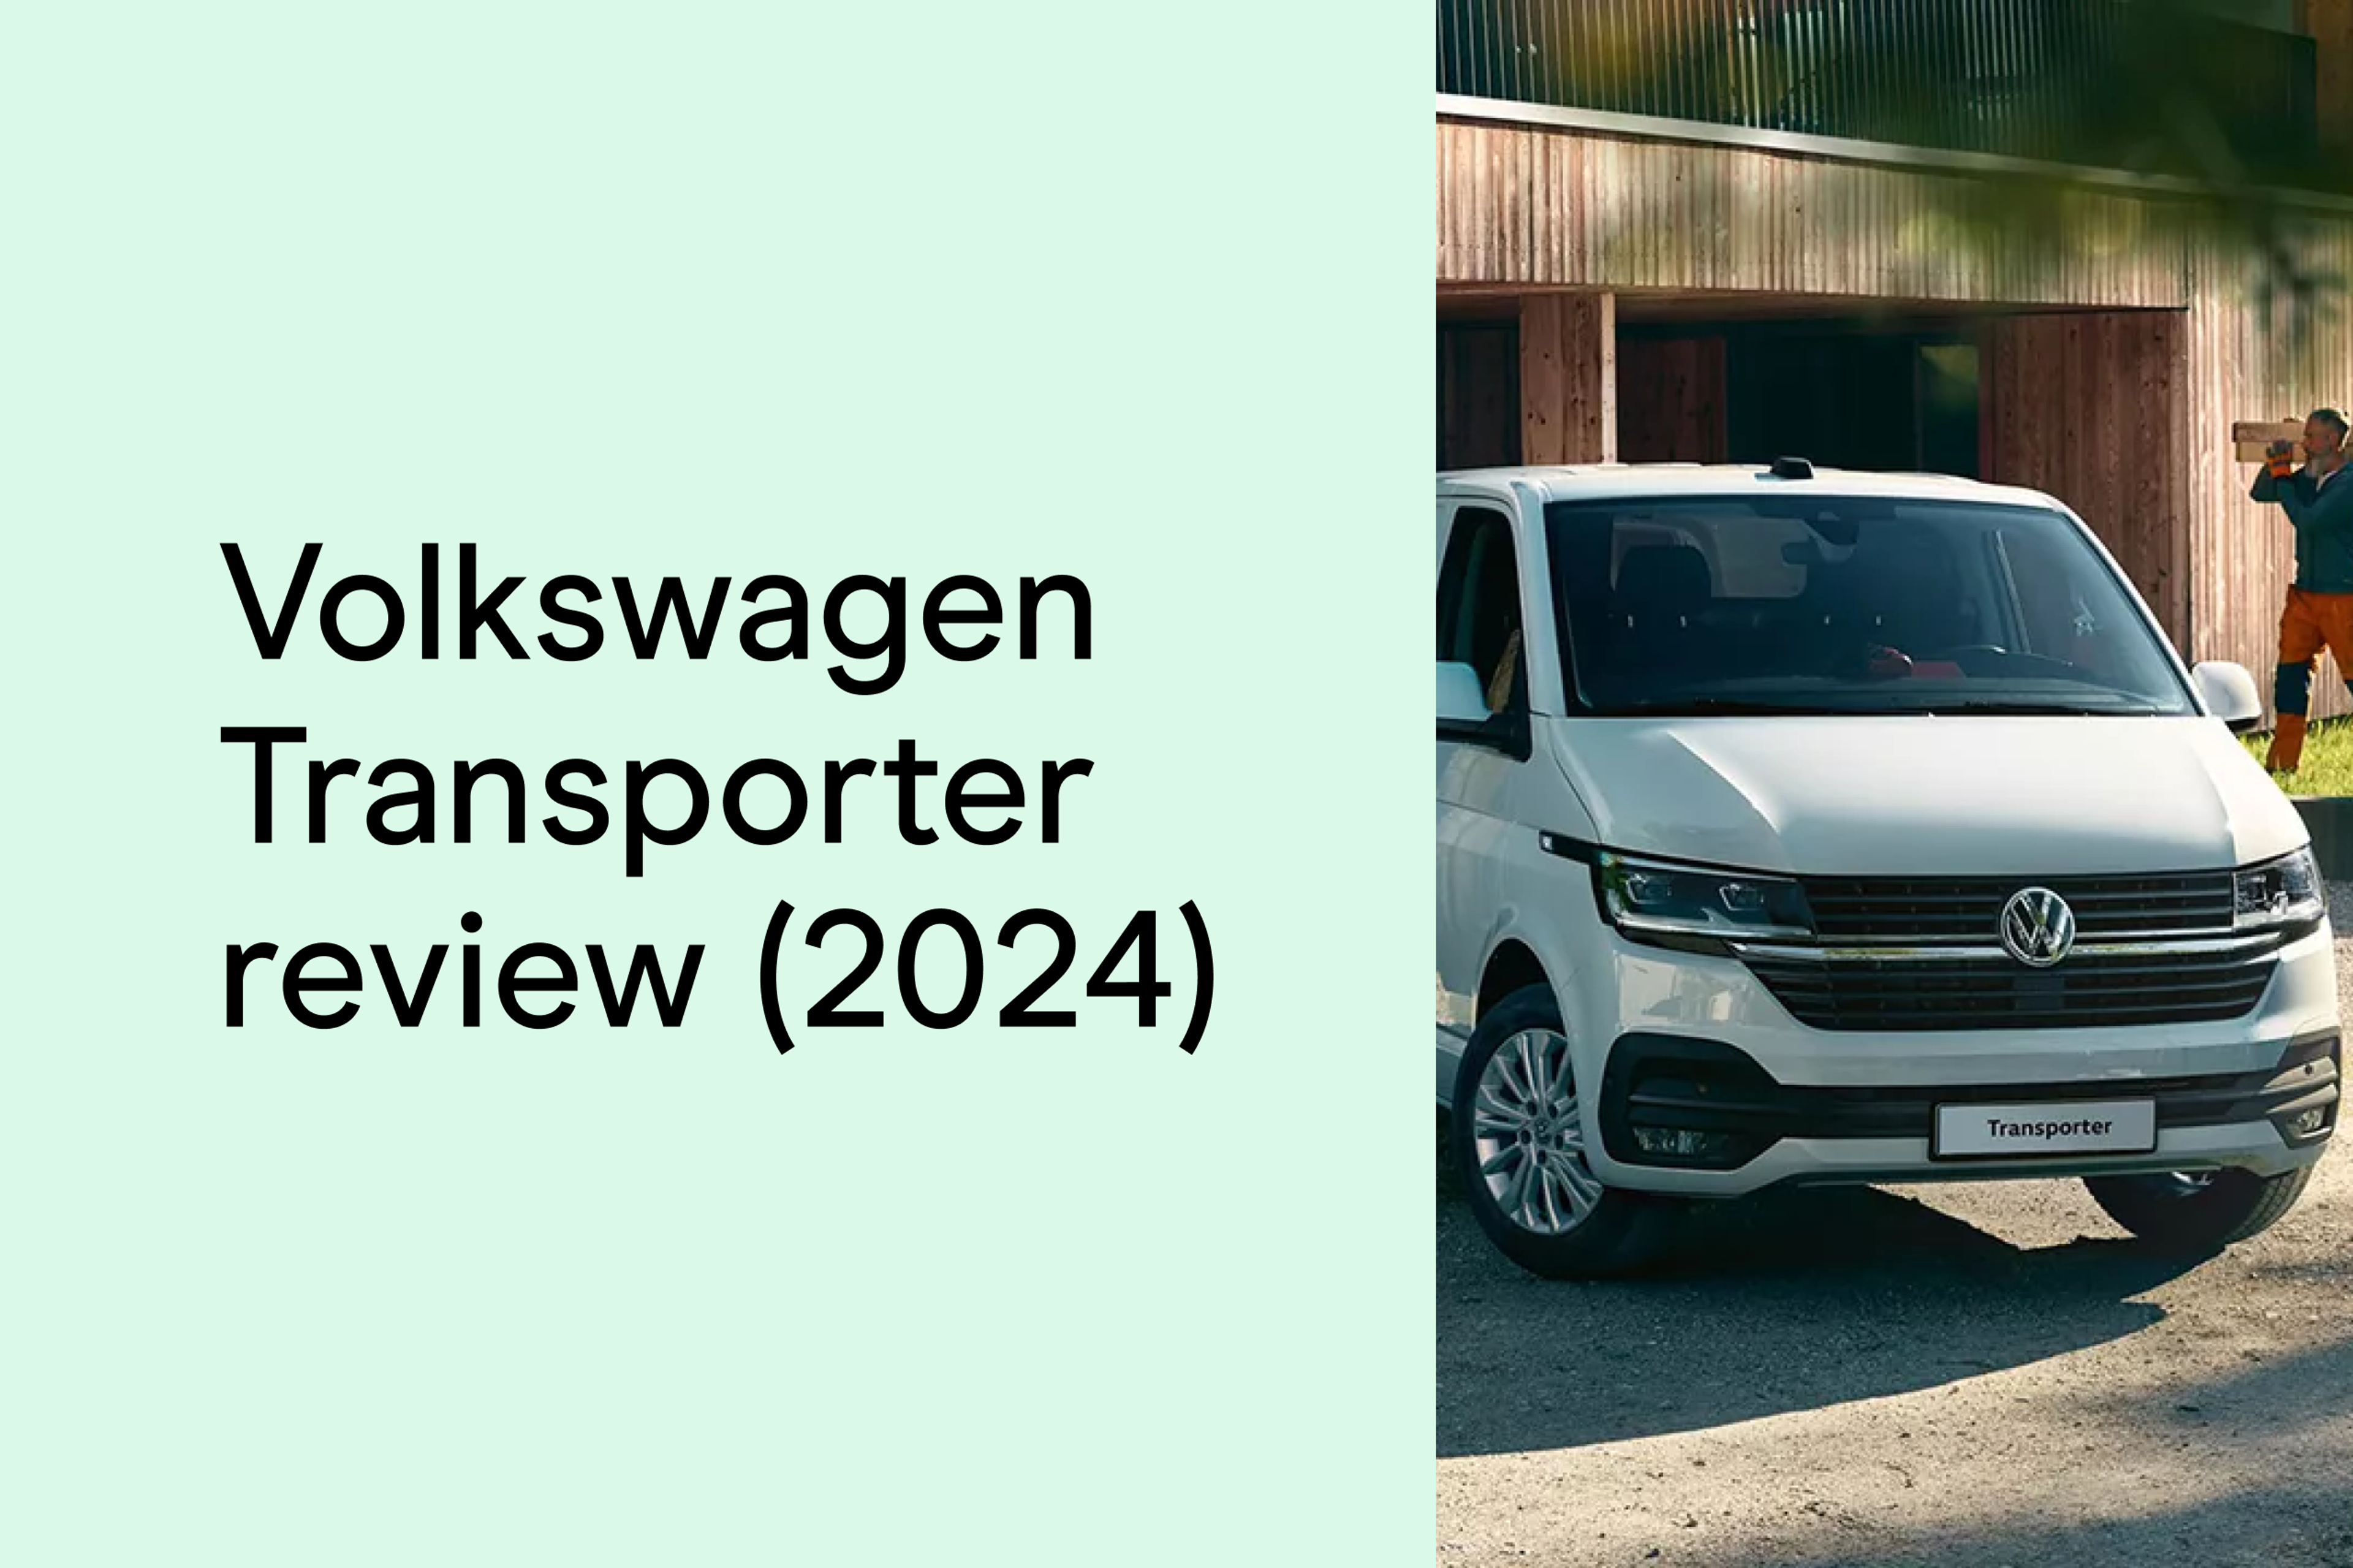 Volkswagen Transporter review (2024)